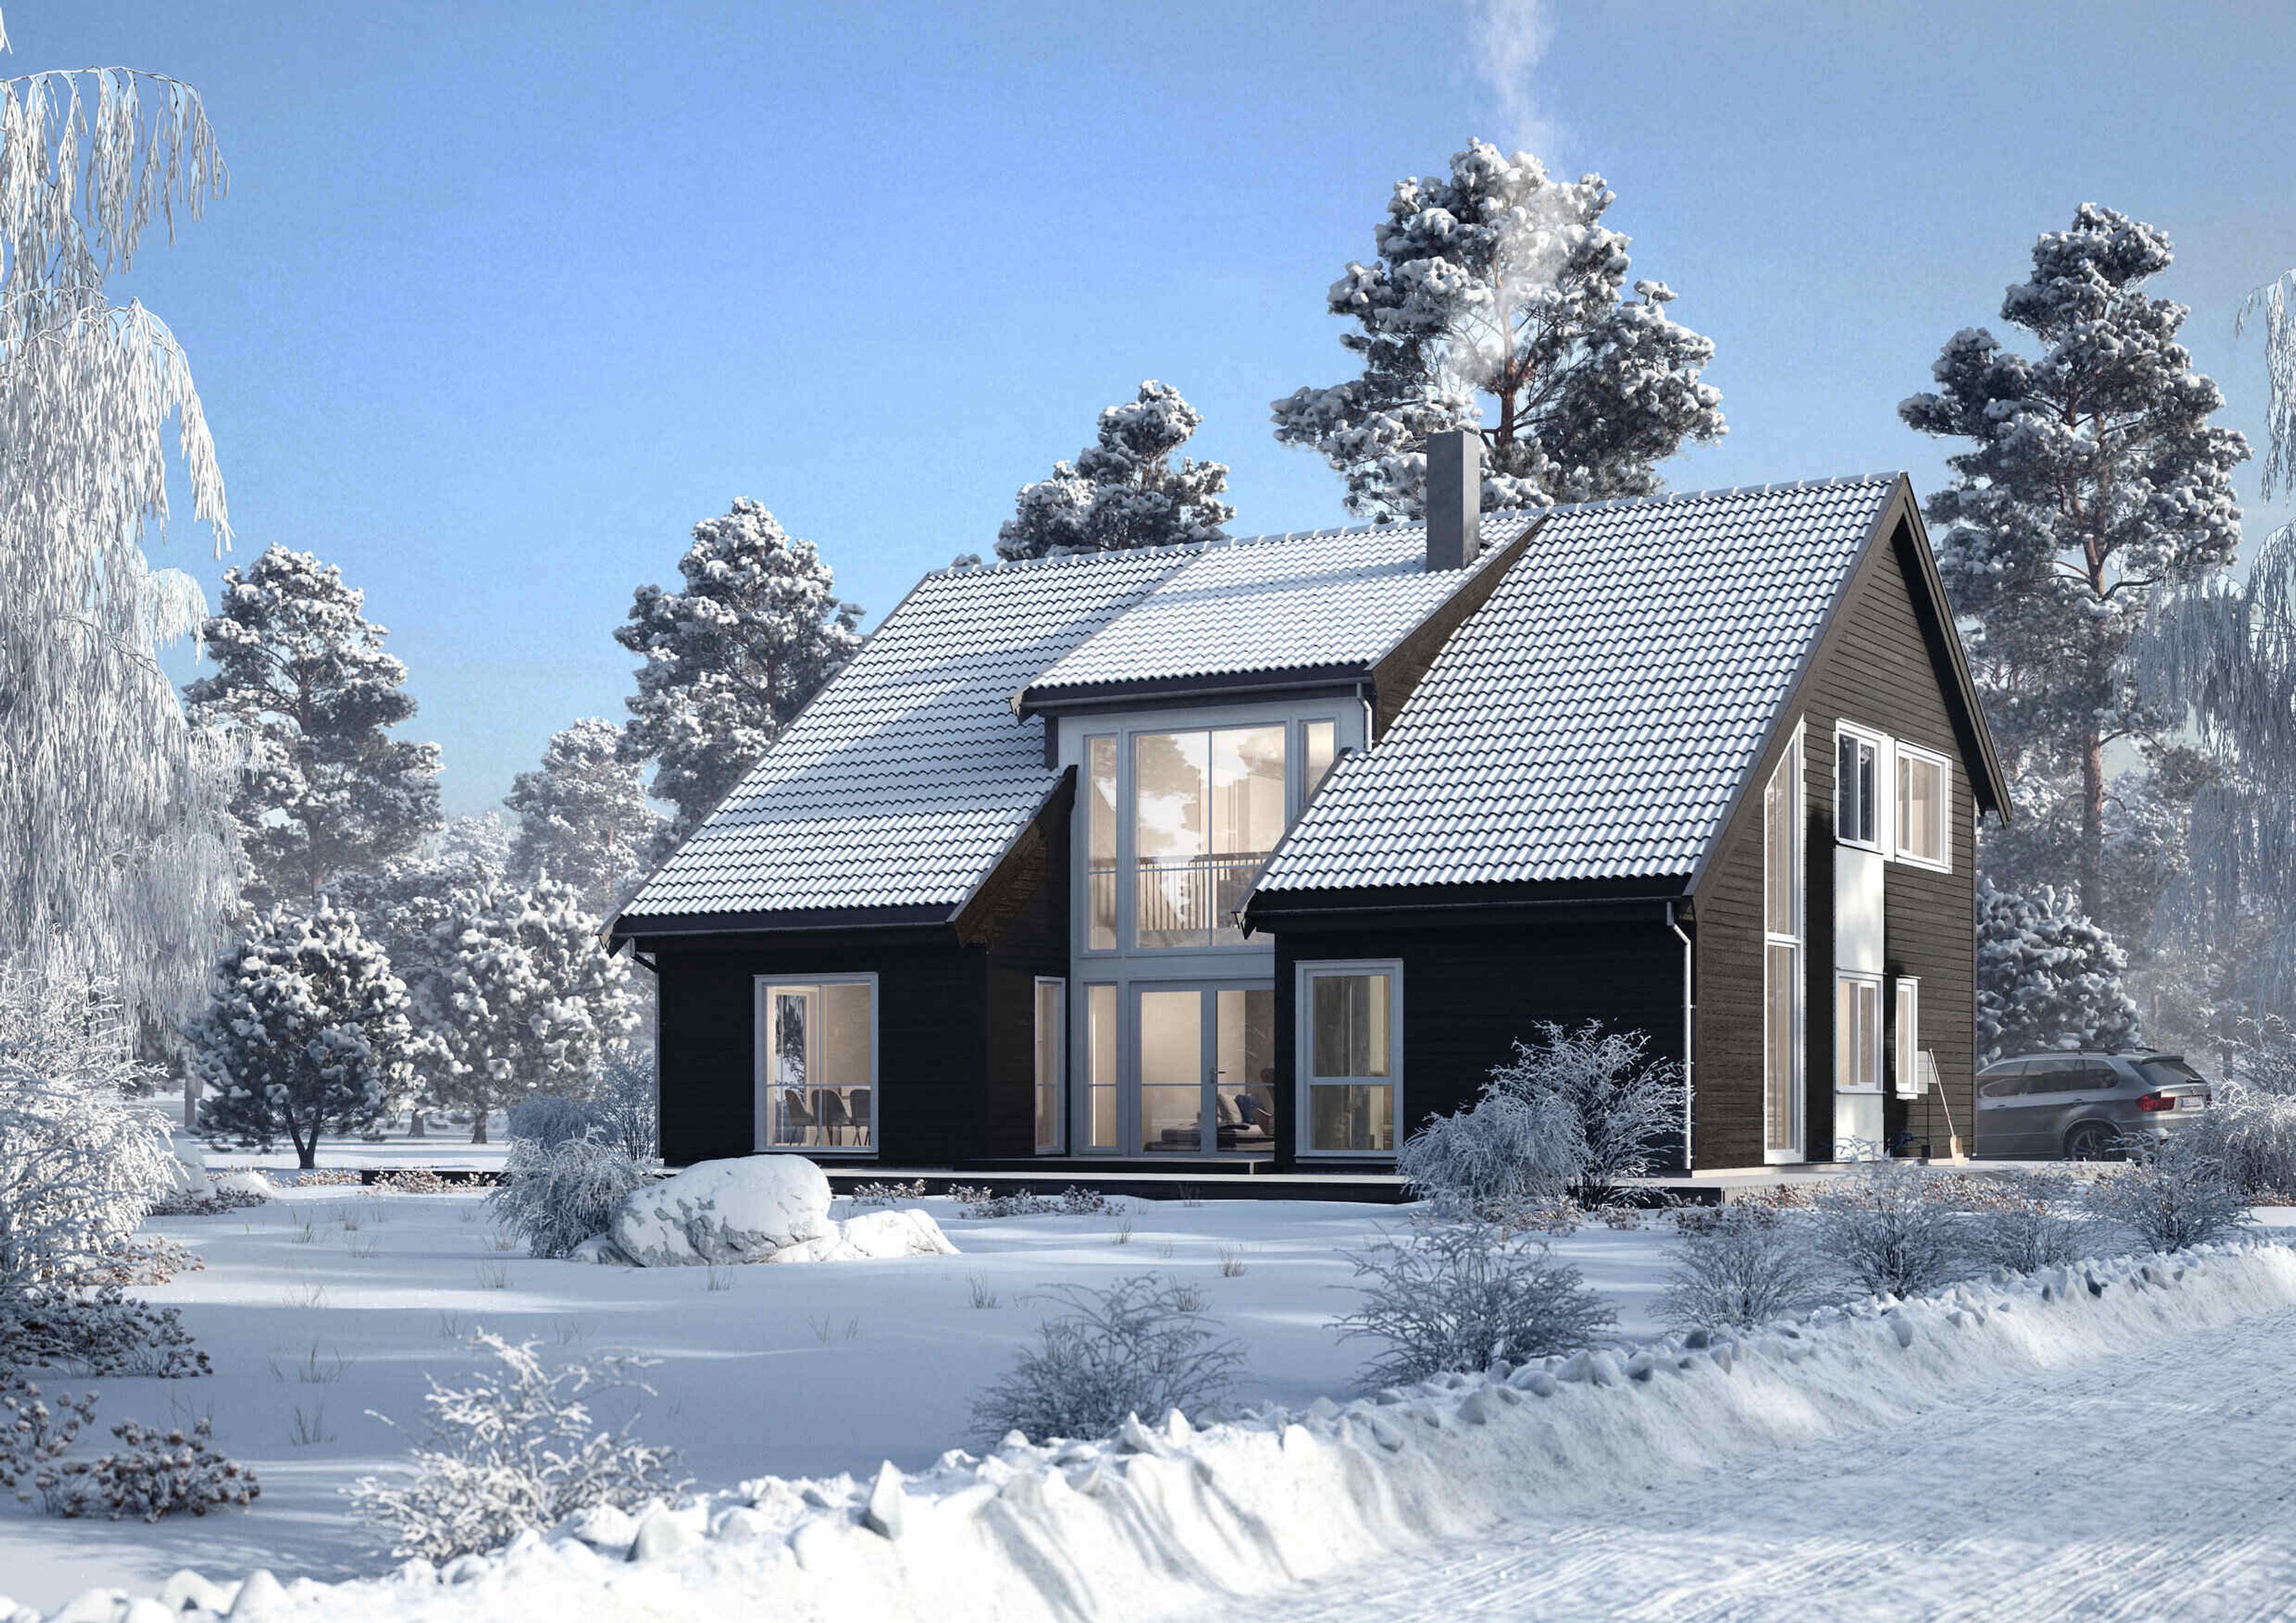 Et svart hus med skråtak over to etasjer i vinterlandskap